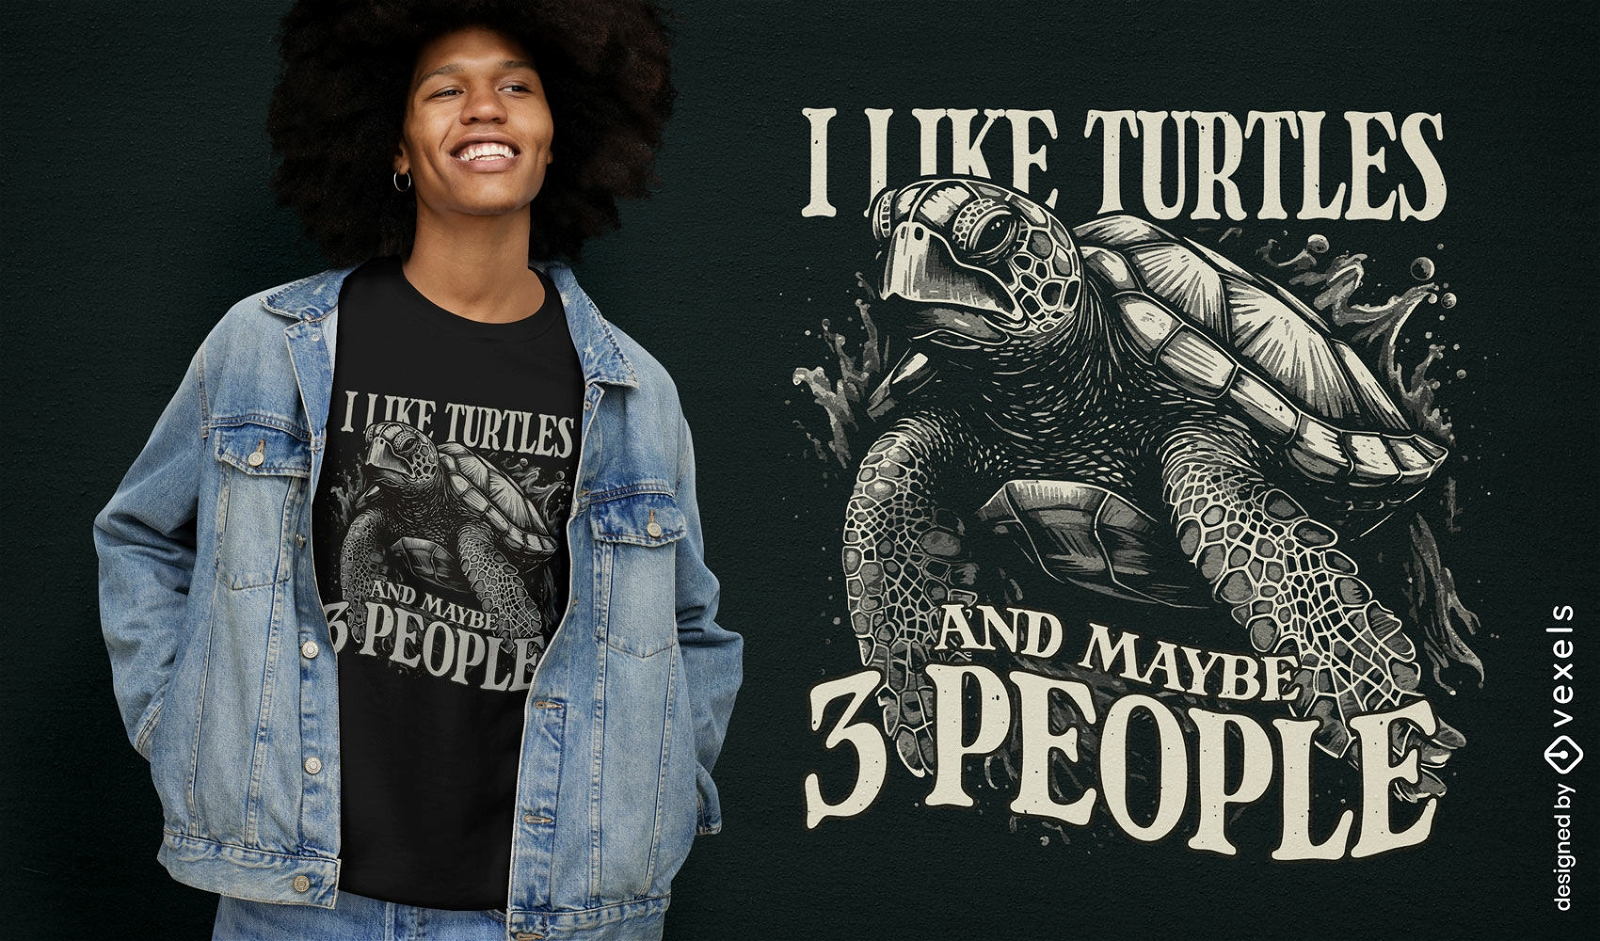 Dise?o de camiseta con cita de amante de las tortugas.